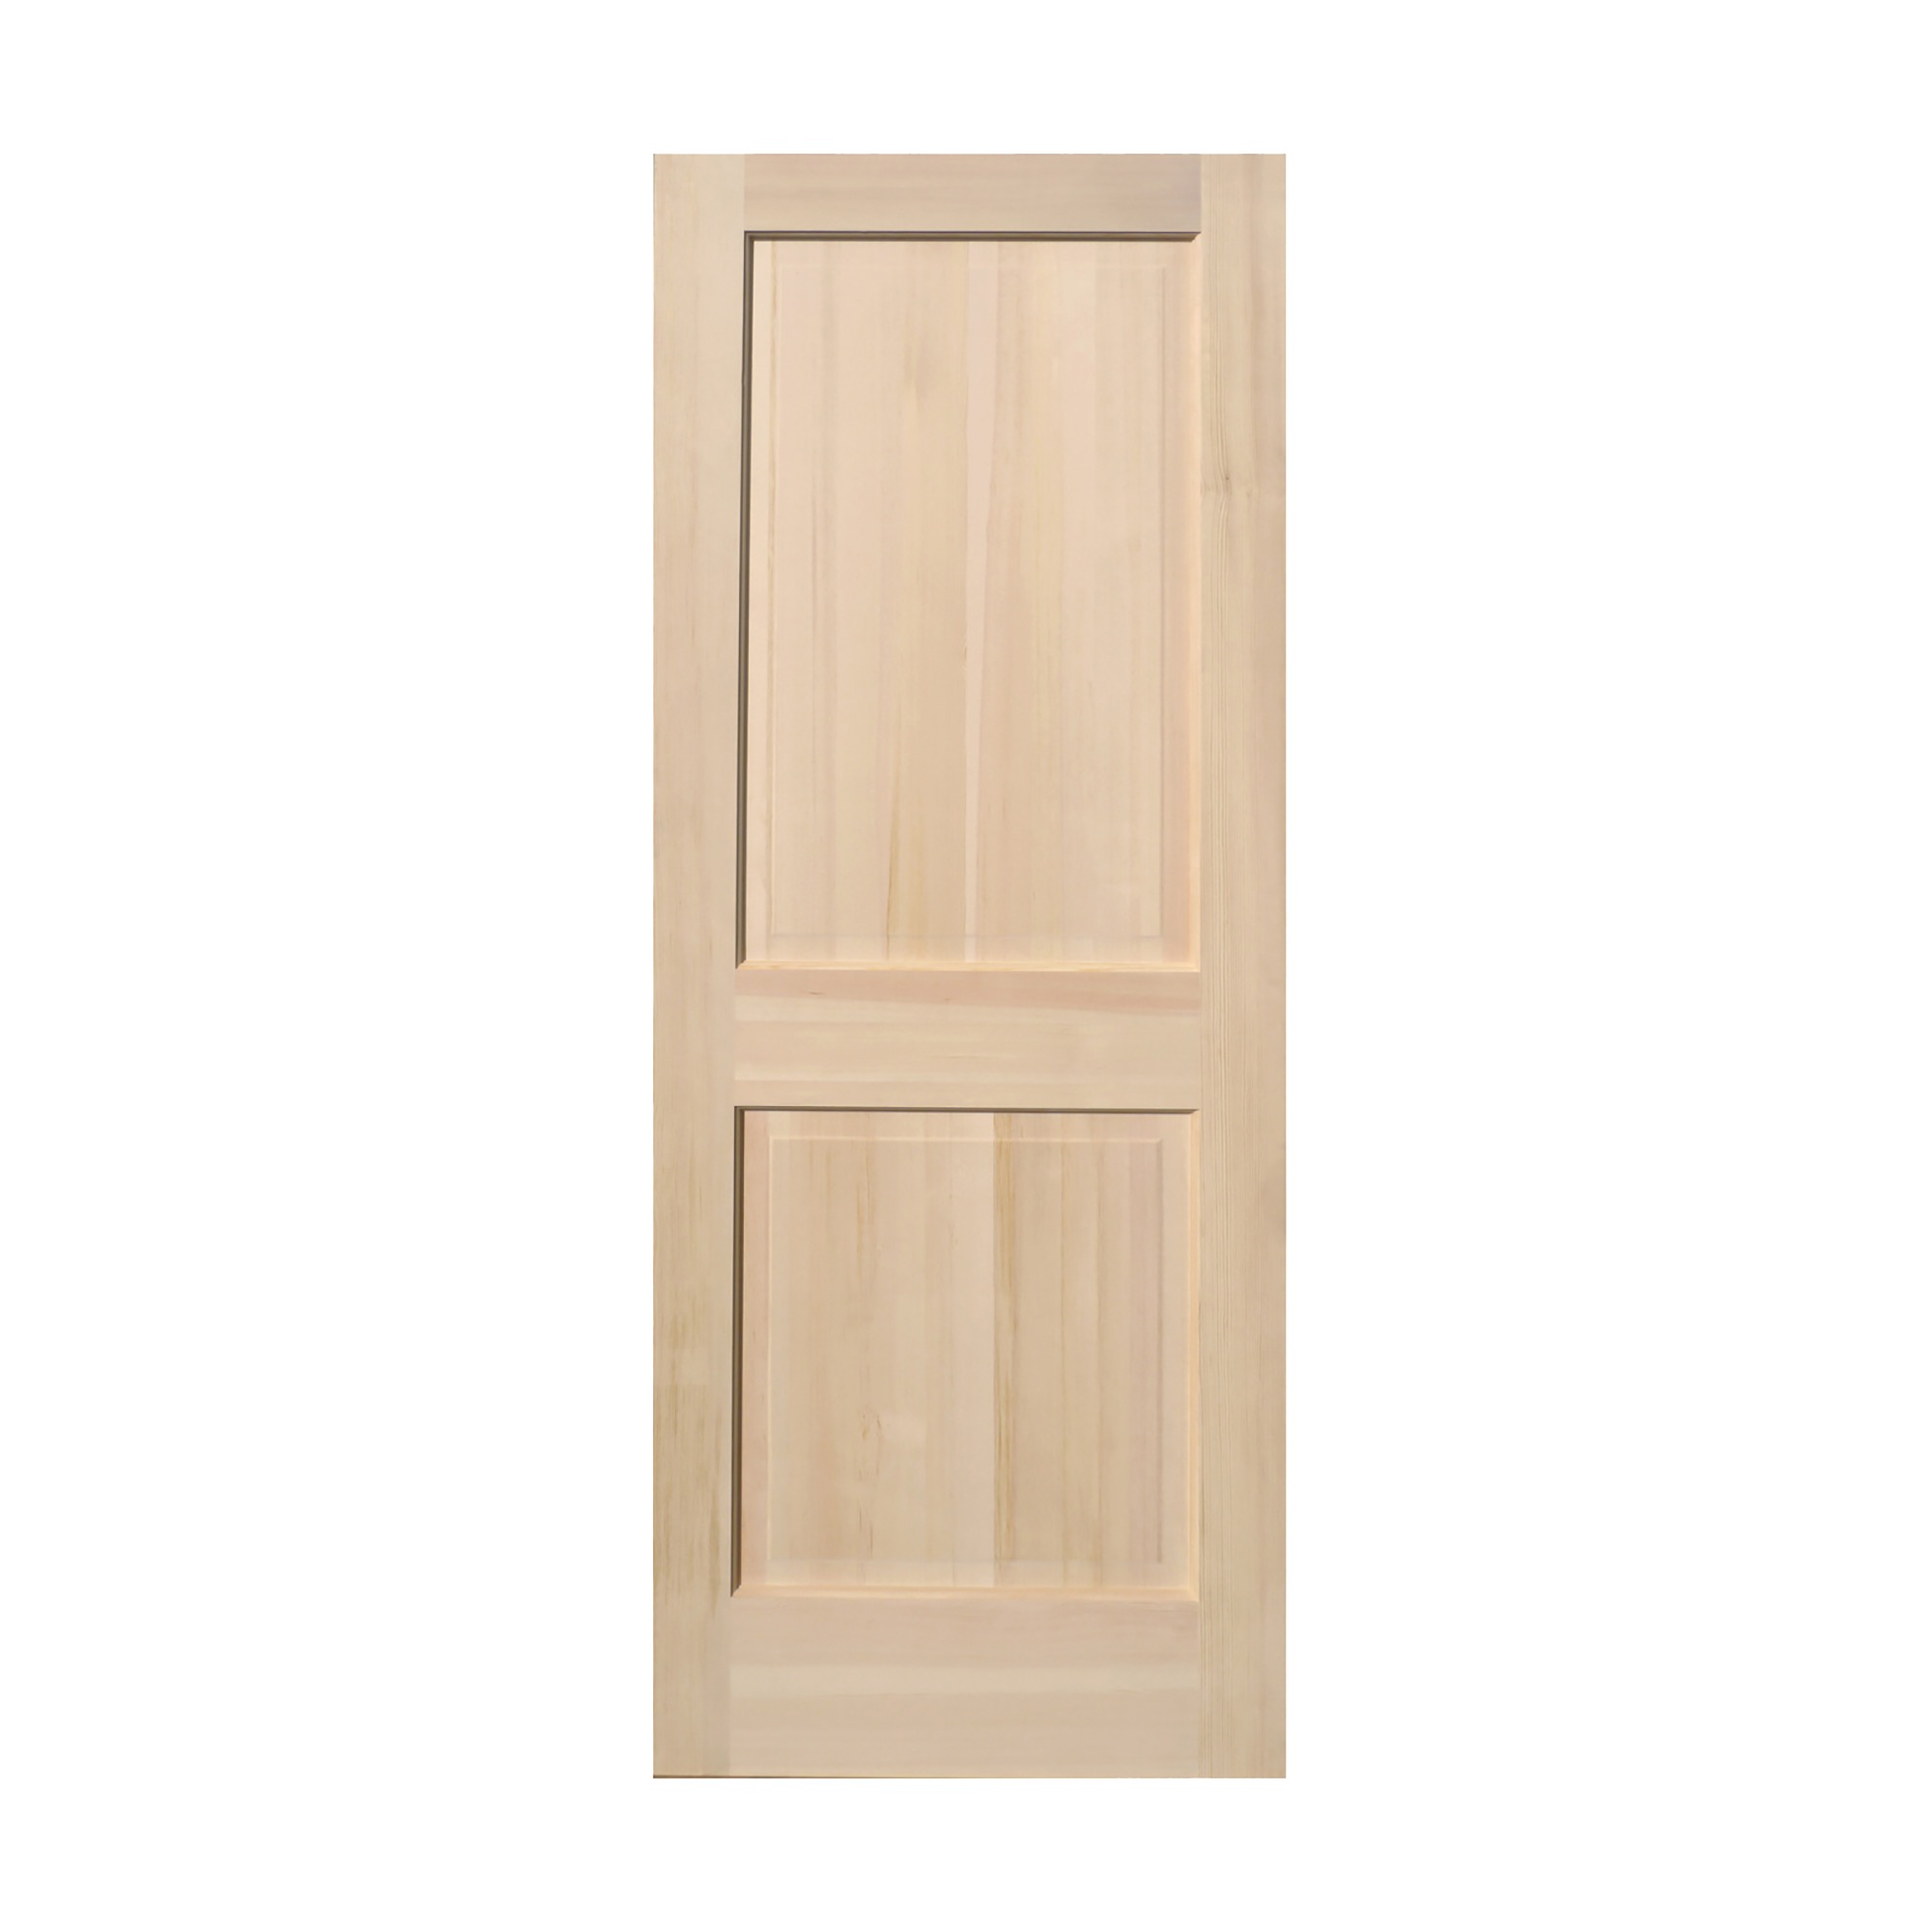 木製パインドア フラットドア W735 | DW-DR004-02-G173 | ドア・扉 